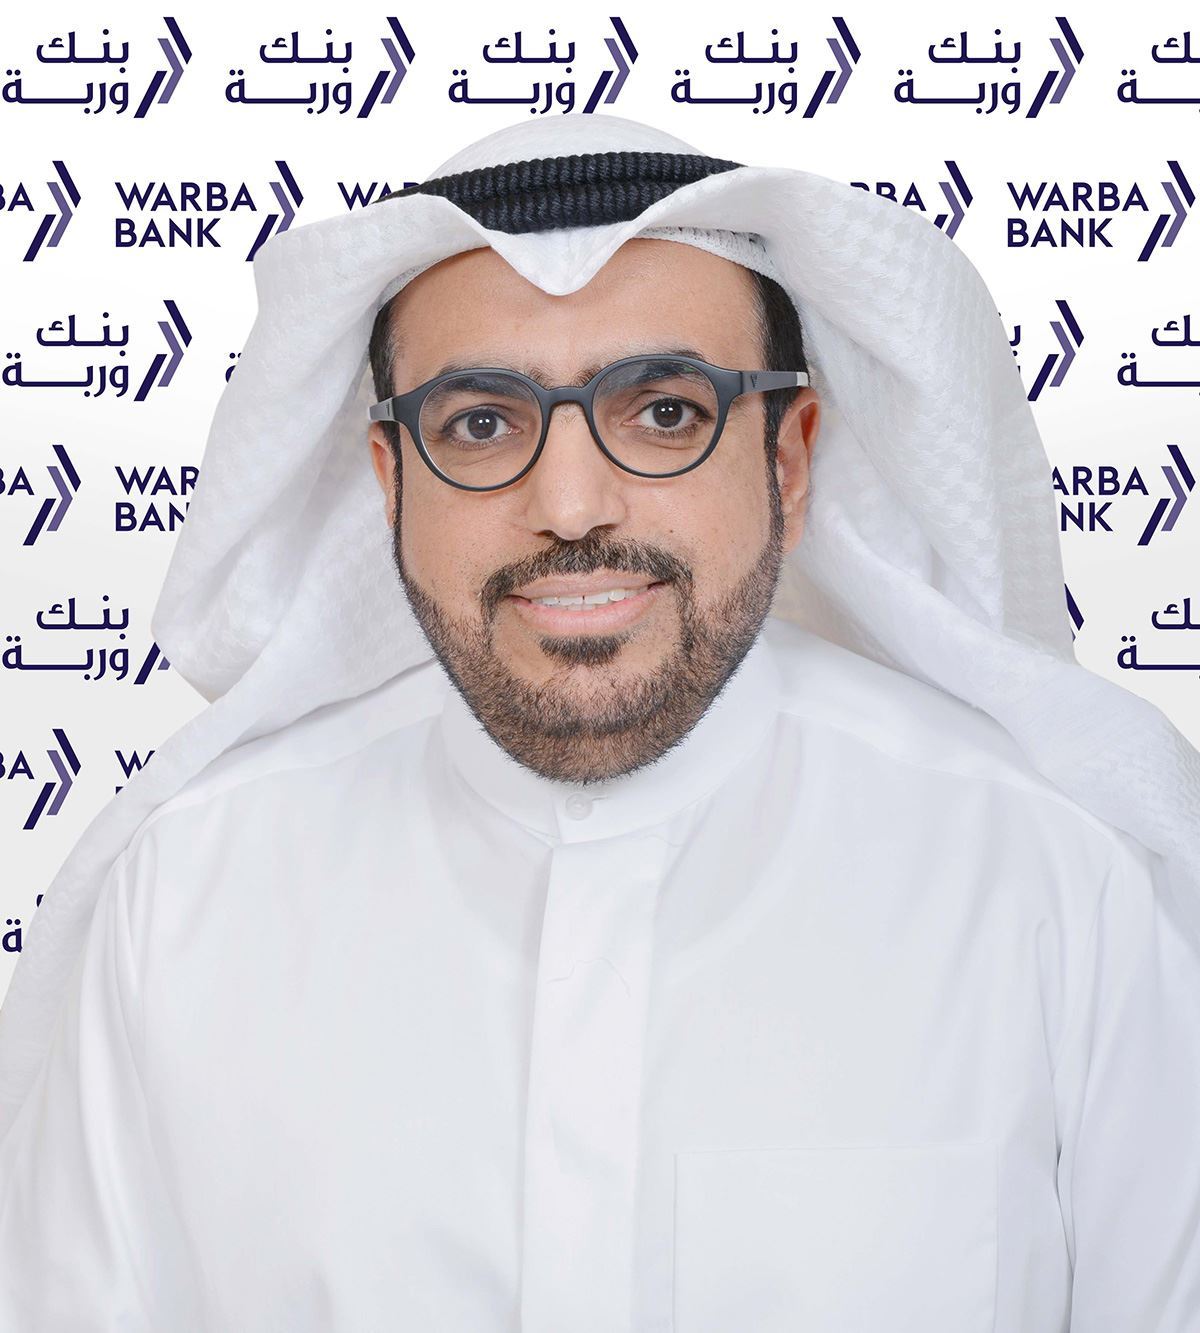 السيد شاهين حمد الغانم، الرئيس التنفيذي في بنك وربة